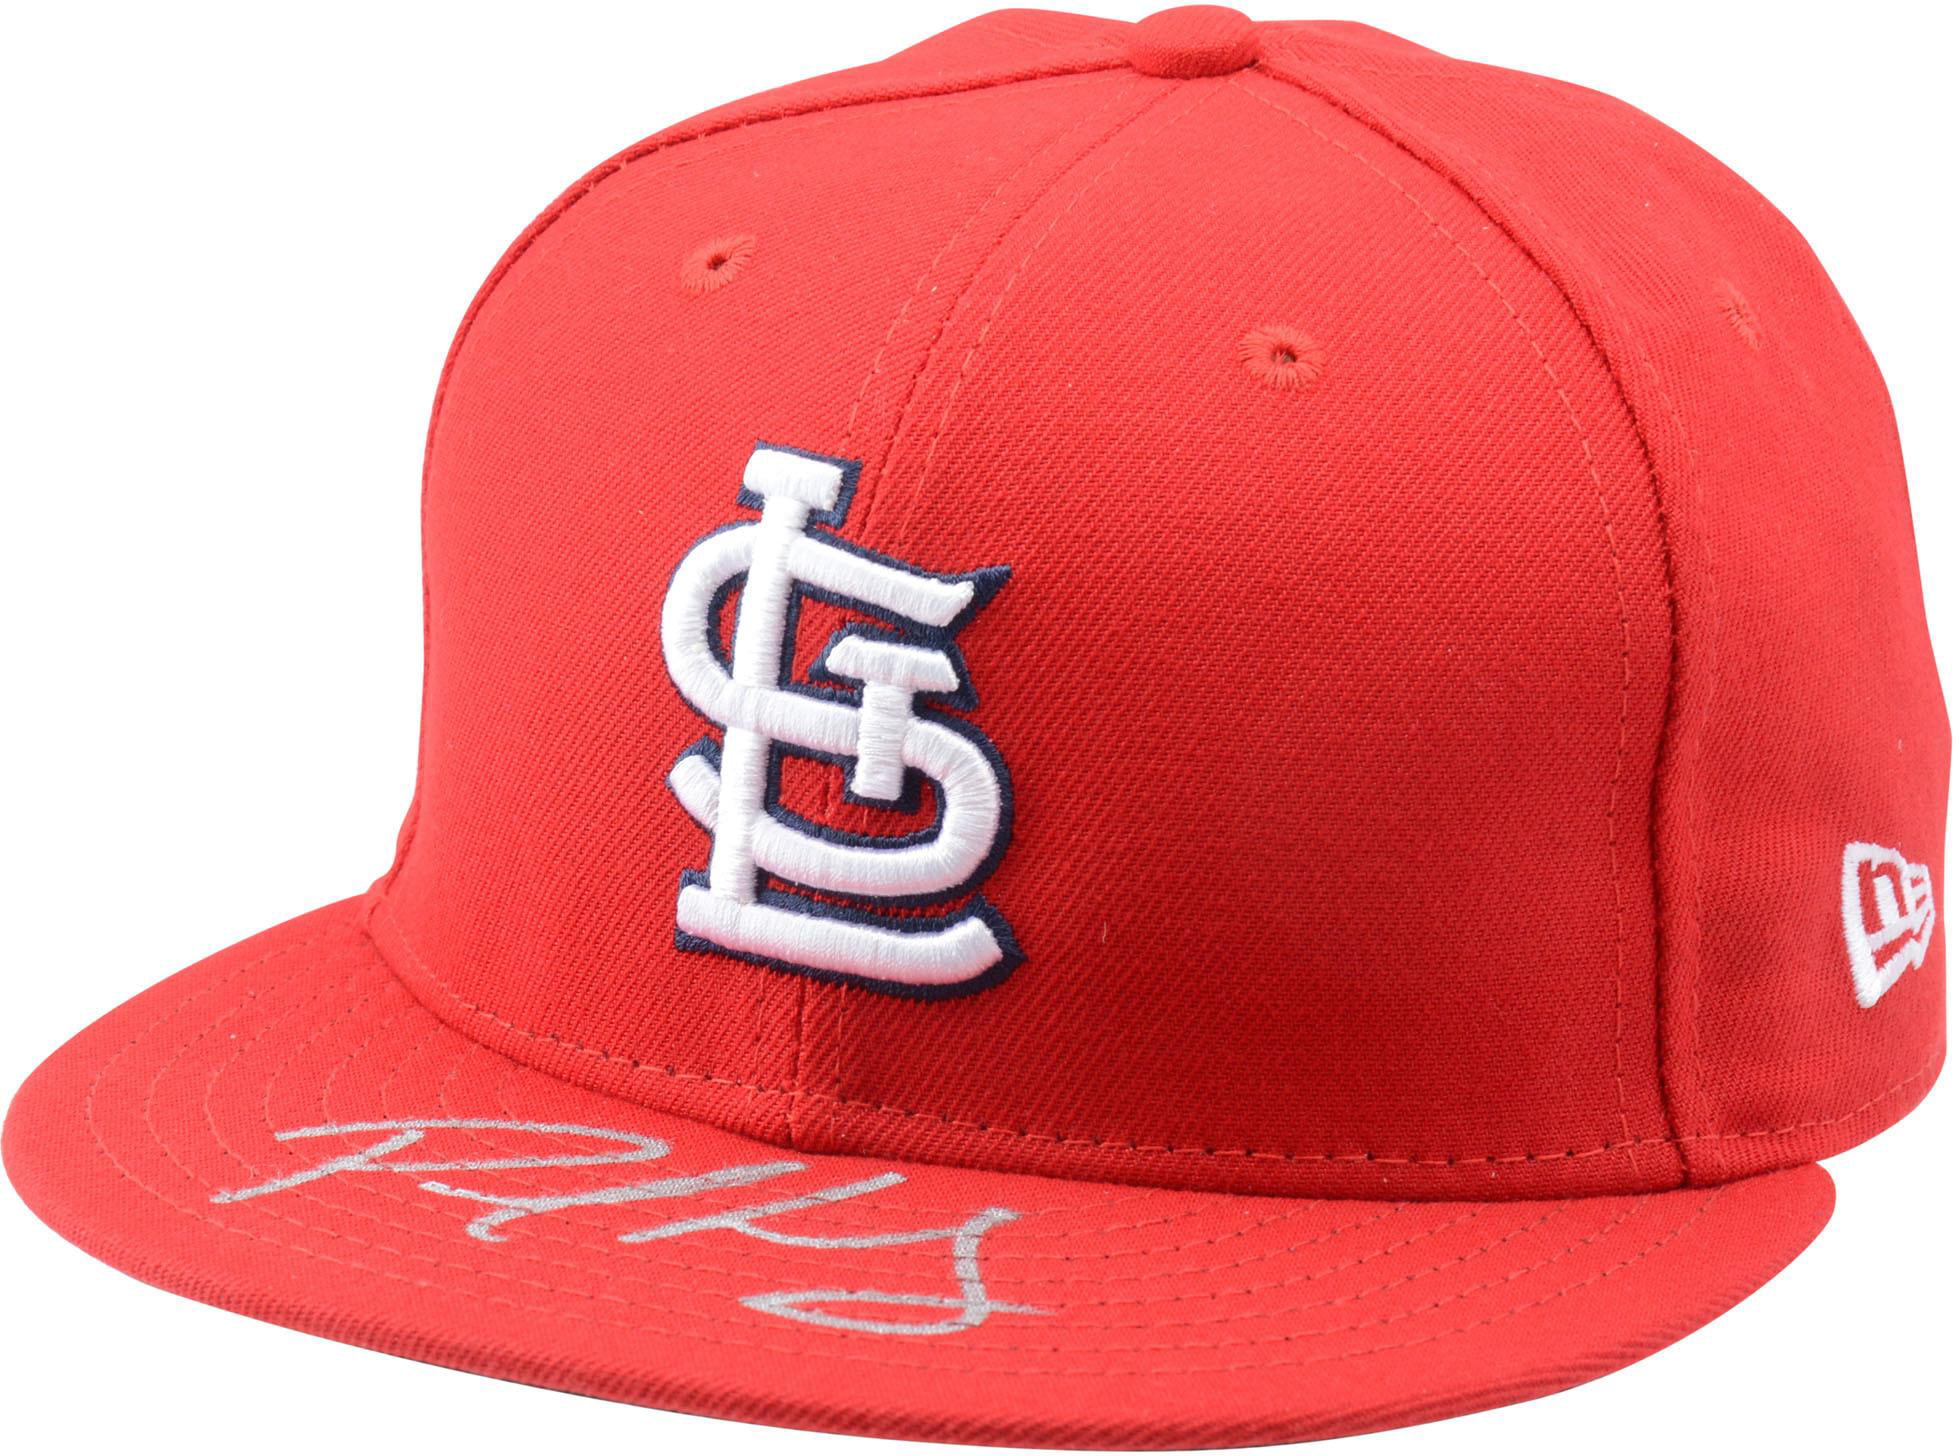 Ozzie Smith St Louis Cardinals Autographed New Era Cap Autographed Hats Fanatics Authentic Certified 